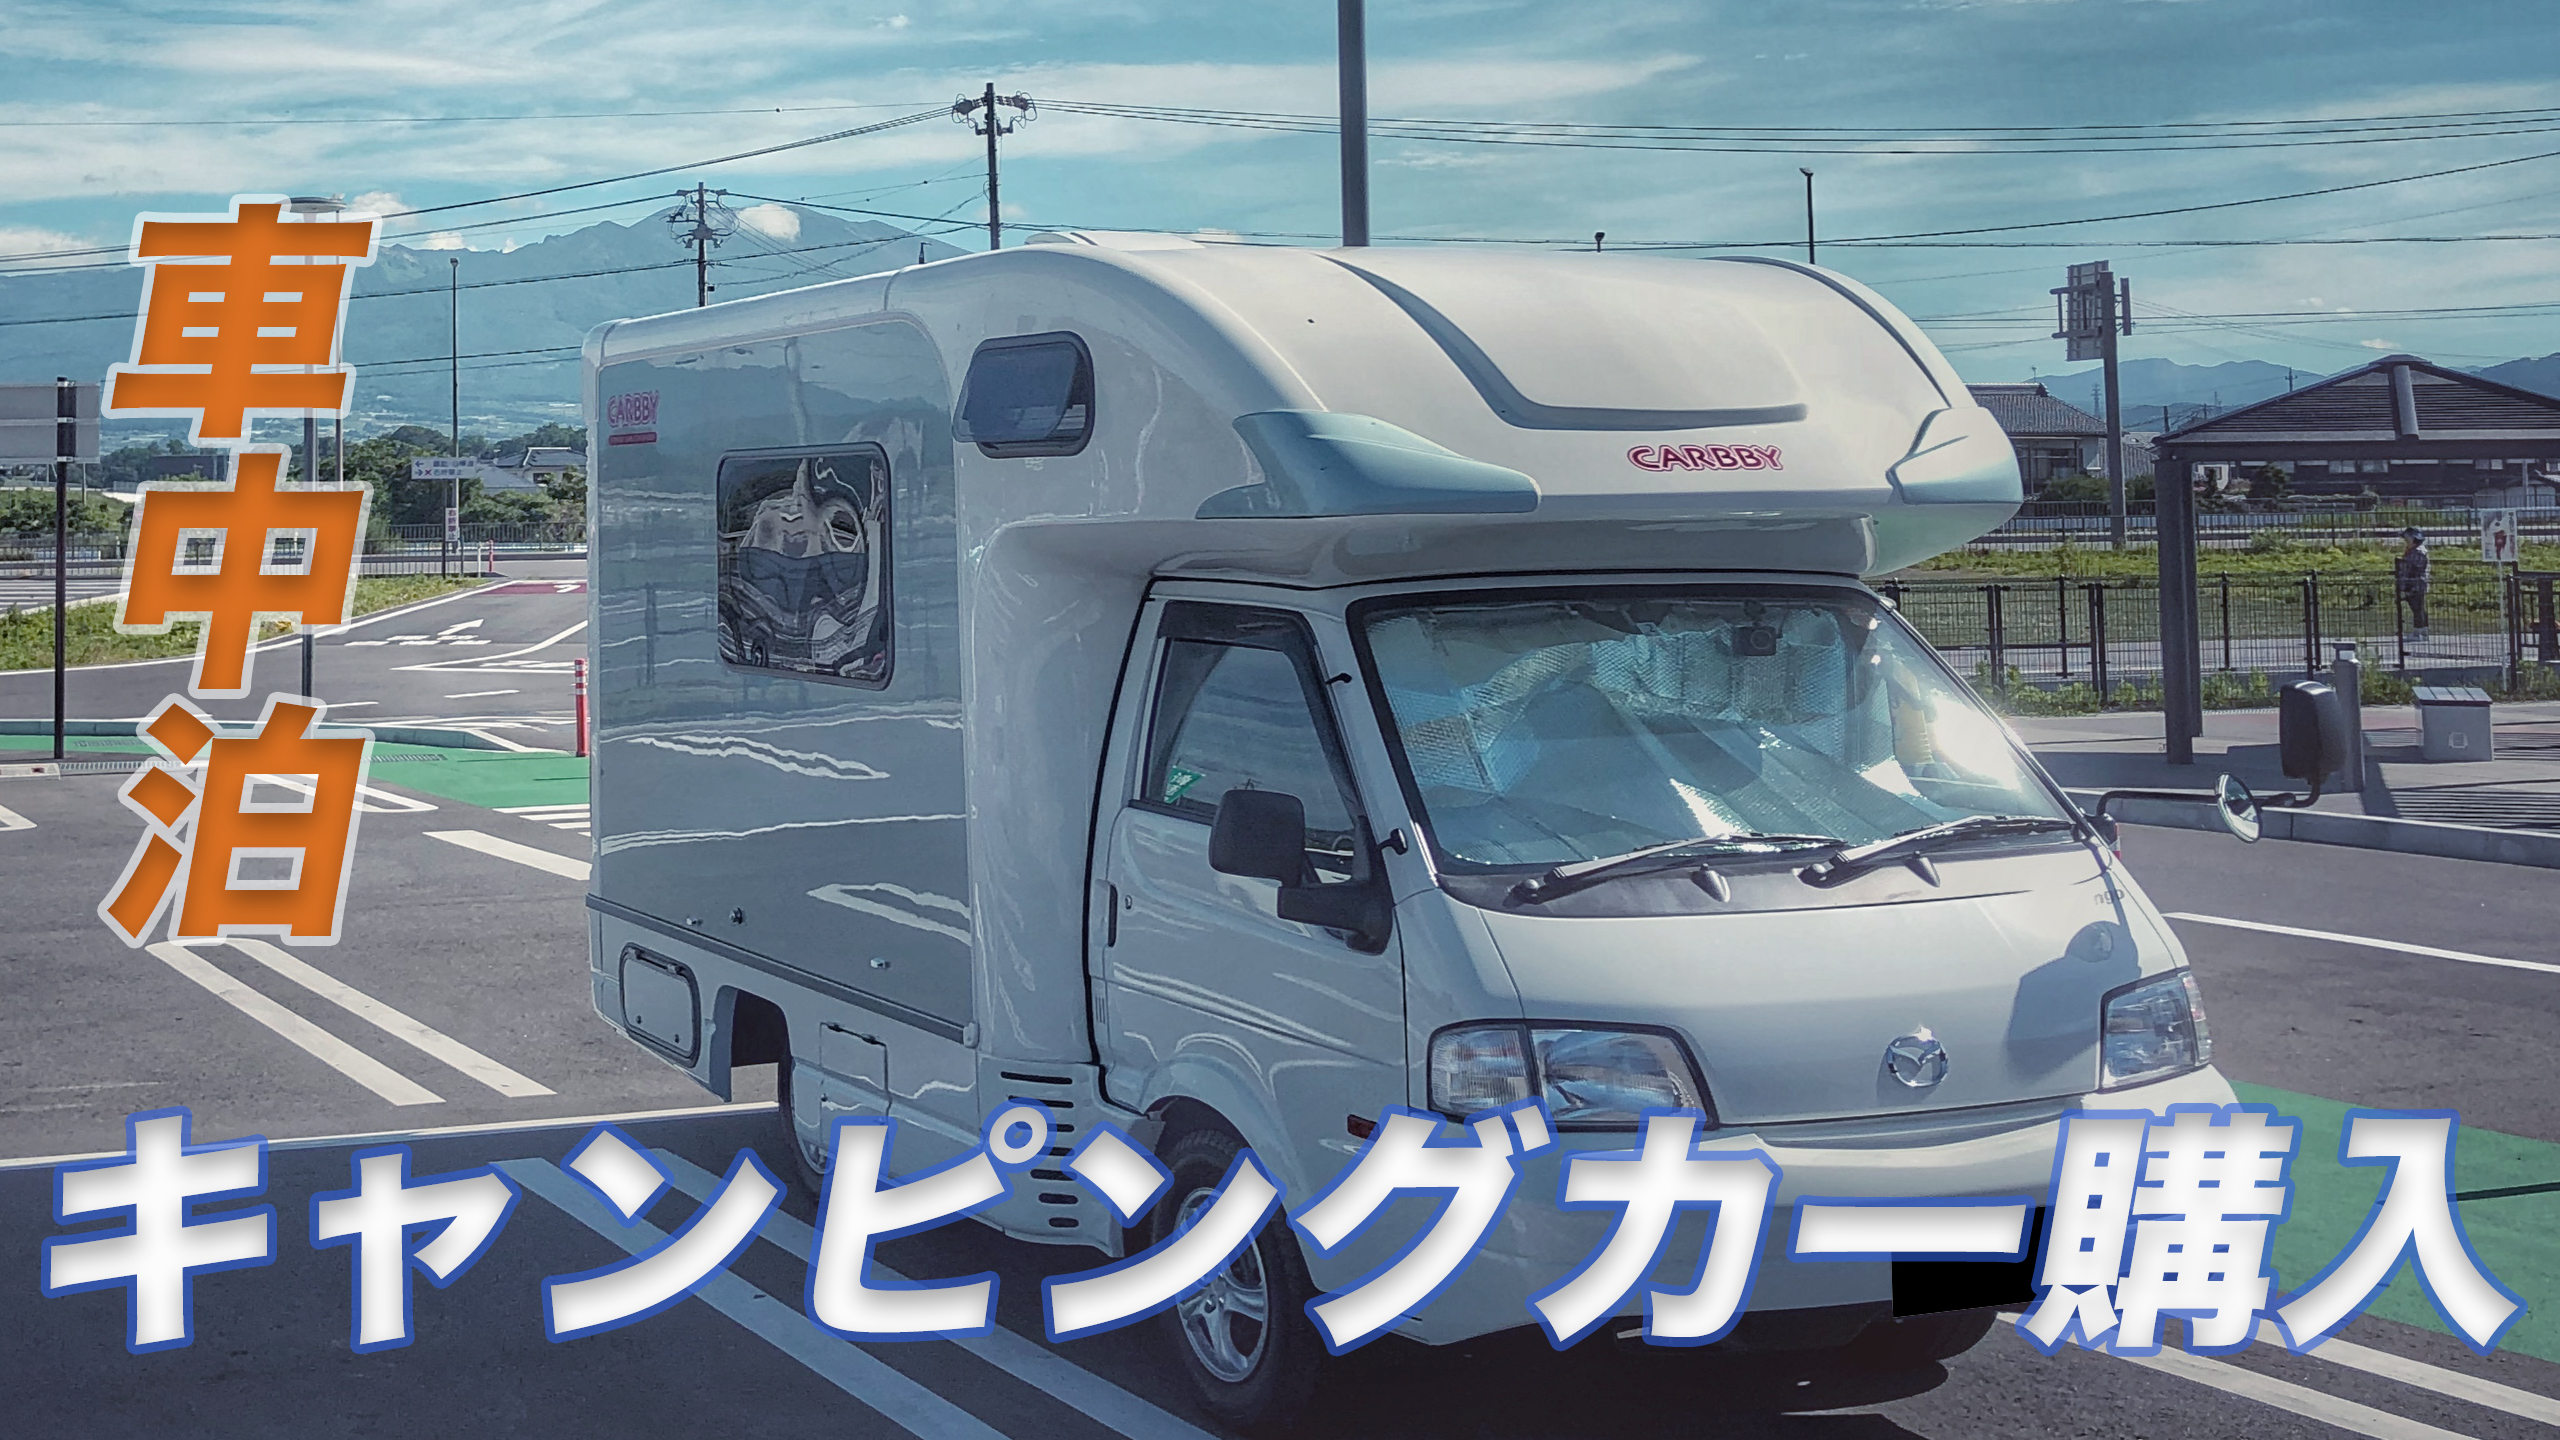 キャンピングカーの旅 初めてのキャンピングカーで長野観光 車中泊 前編 キャンピングカーウェブ